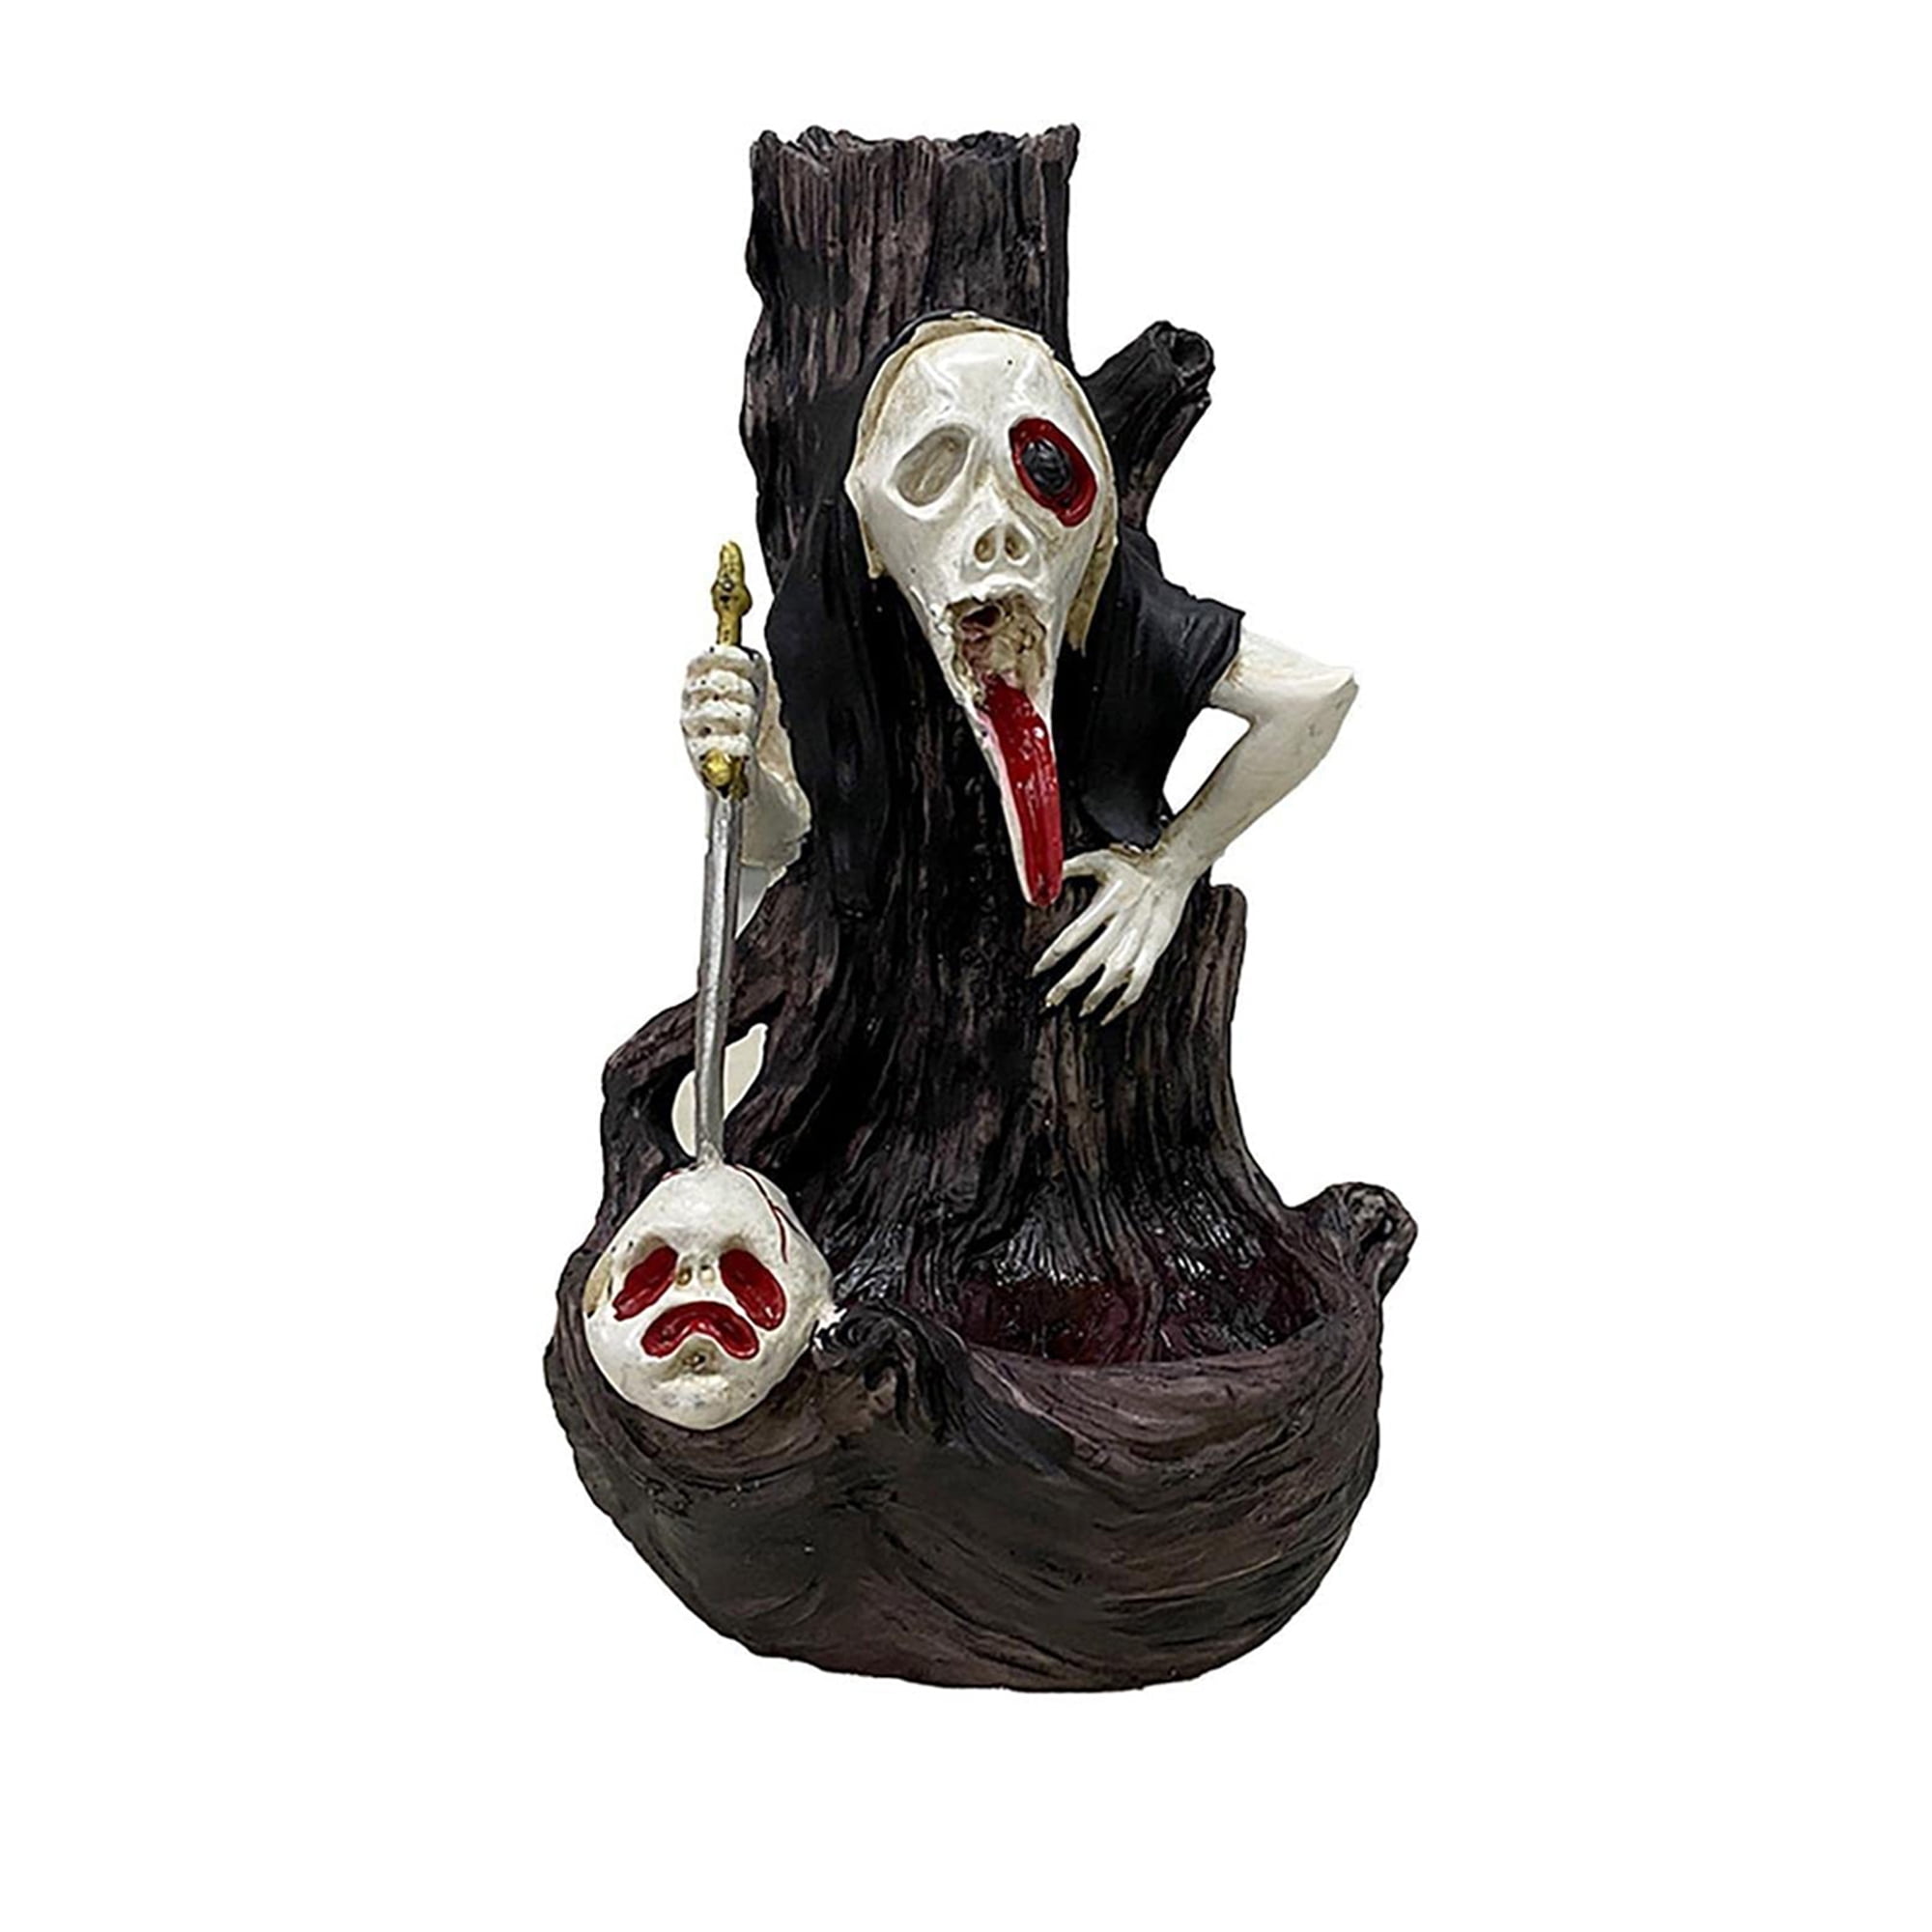 NEW Beaded Skull Decorative Ornament 6.5 cm High Skeleton Gothic Horror Fantasy 